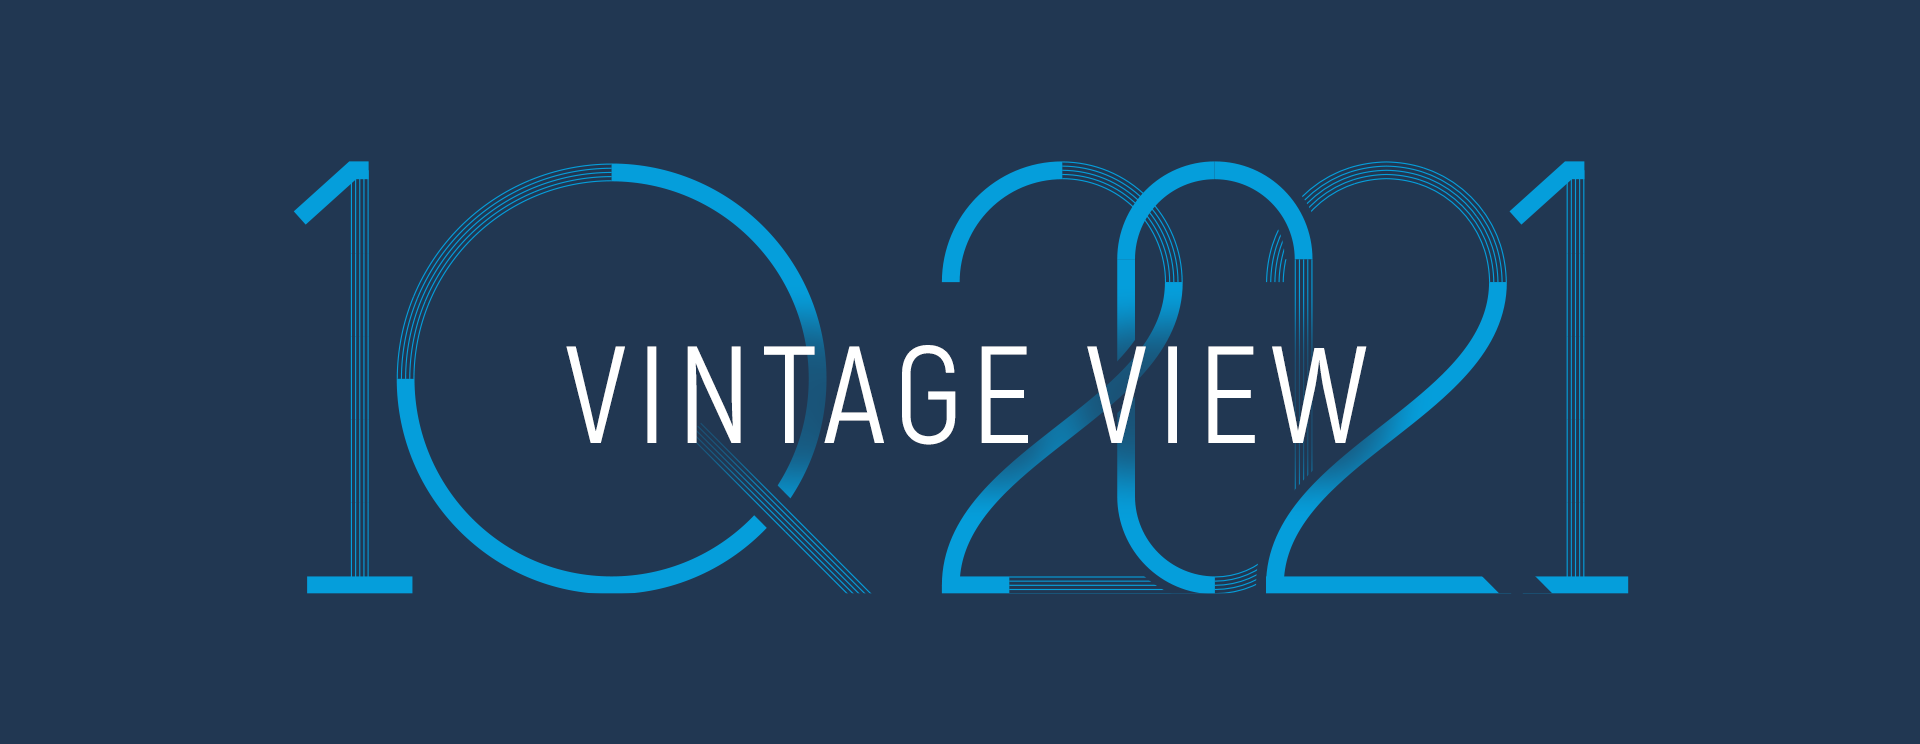 Vintage View – 1Q 2021